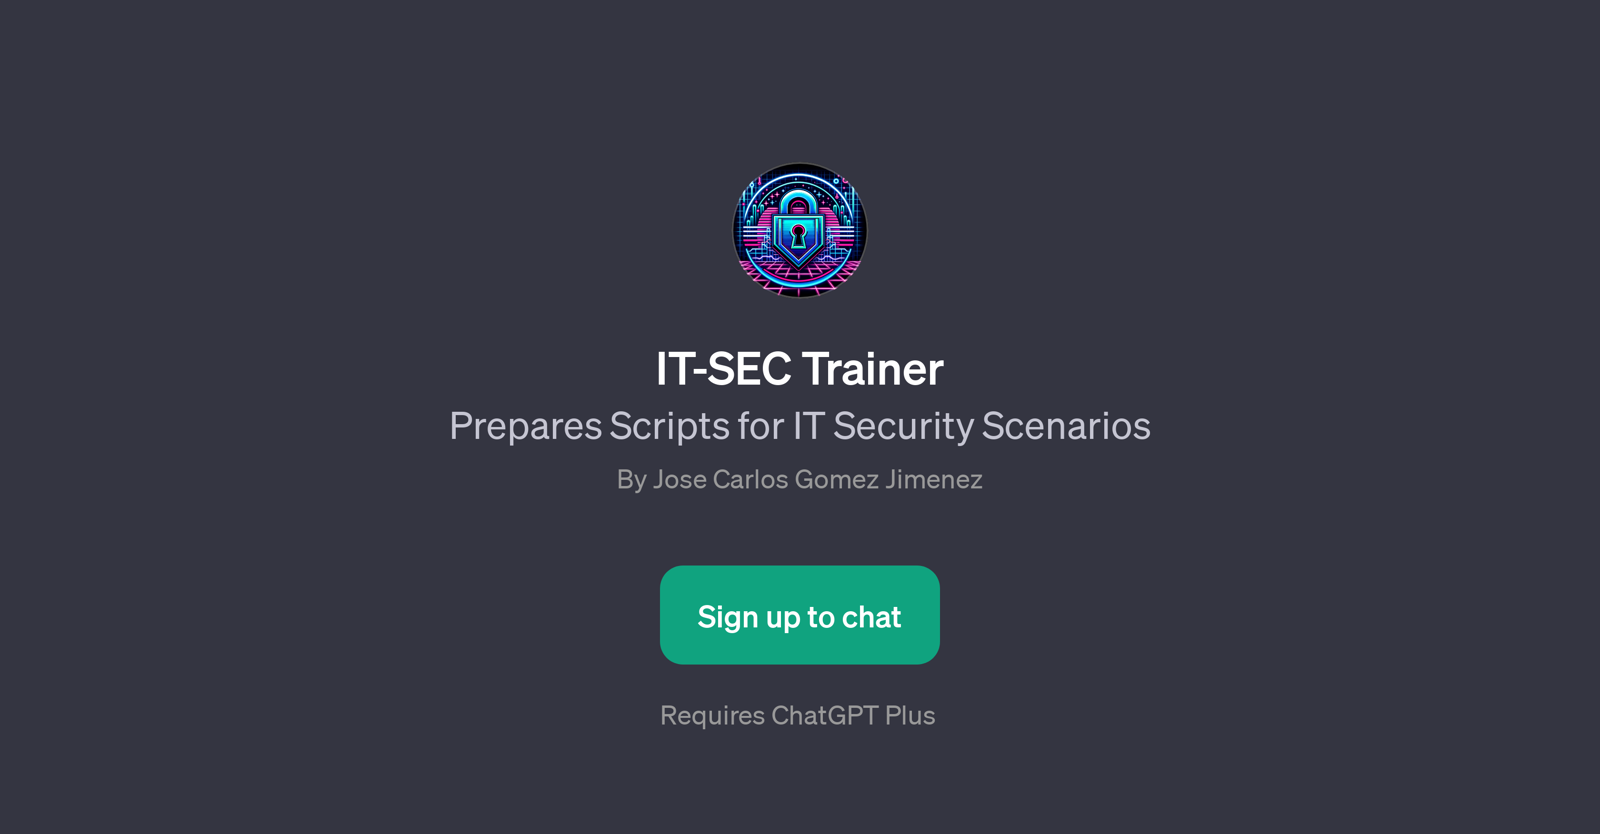 IT-SEC Trainer website